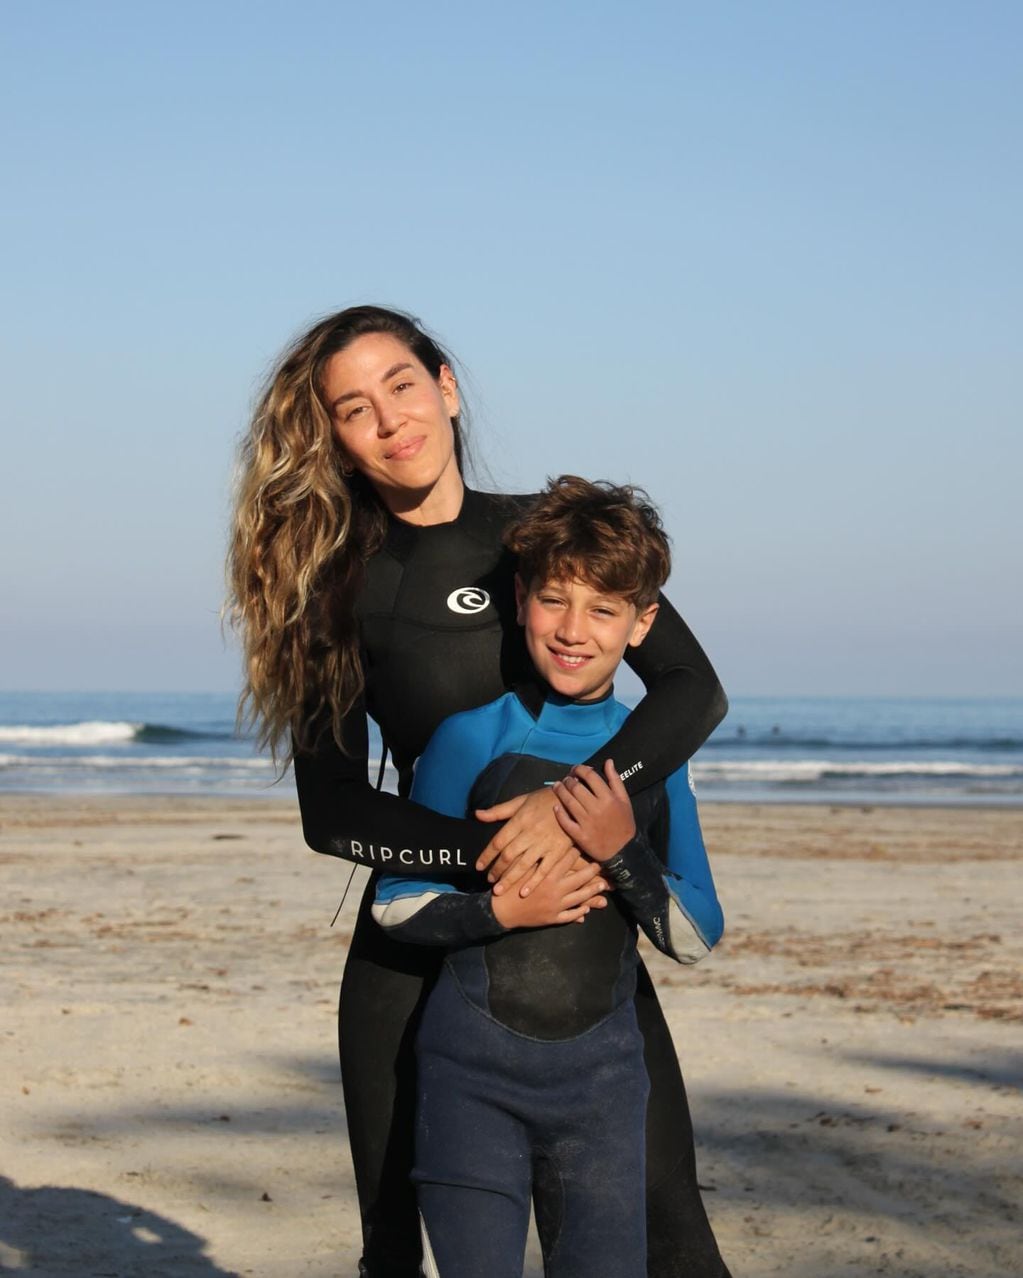 Jimena Barón y Morrison practicando surf en Brasil